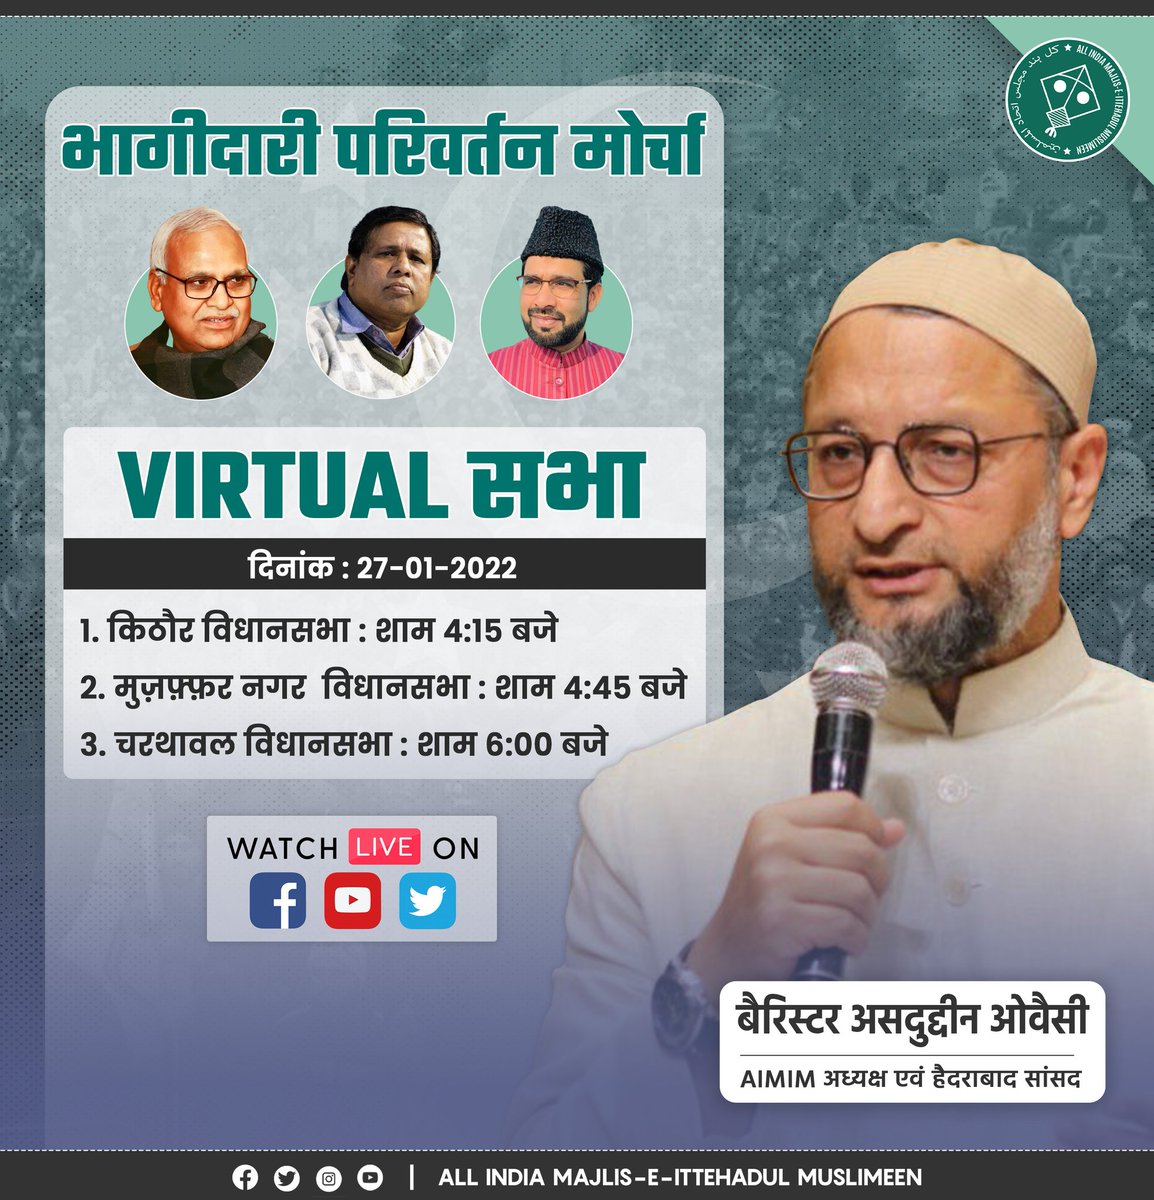 बैरिस्टर @asadowaisi आज virtual सभा के ज़रिए किठौर, मुज़फ़्फ़रनगर, और चर्थावल की अवाम से मुख़ातिब होंगे। #UttarPradeshElections2022 #UttarPradeshElection2022 #UttarPradesh